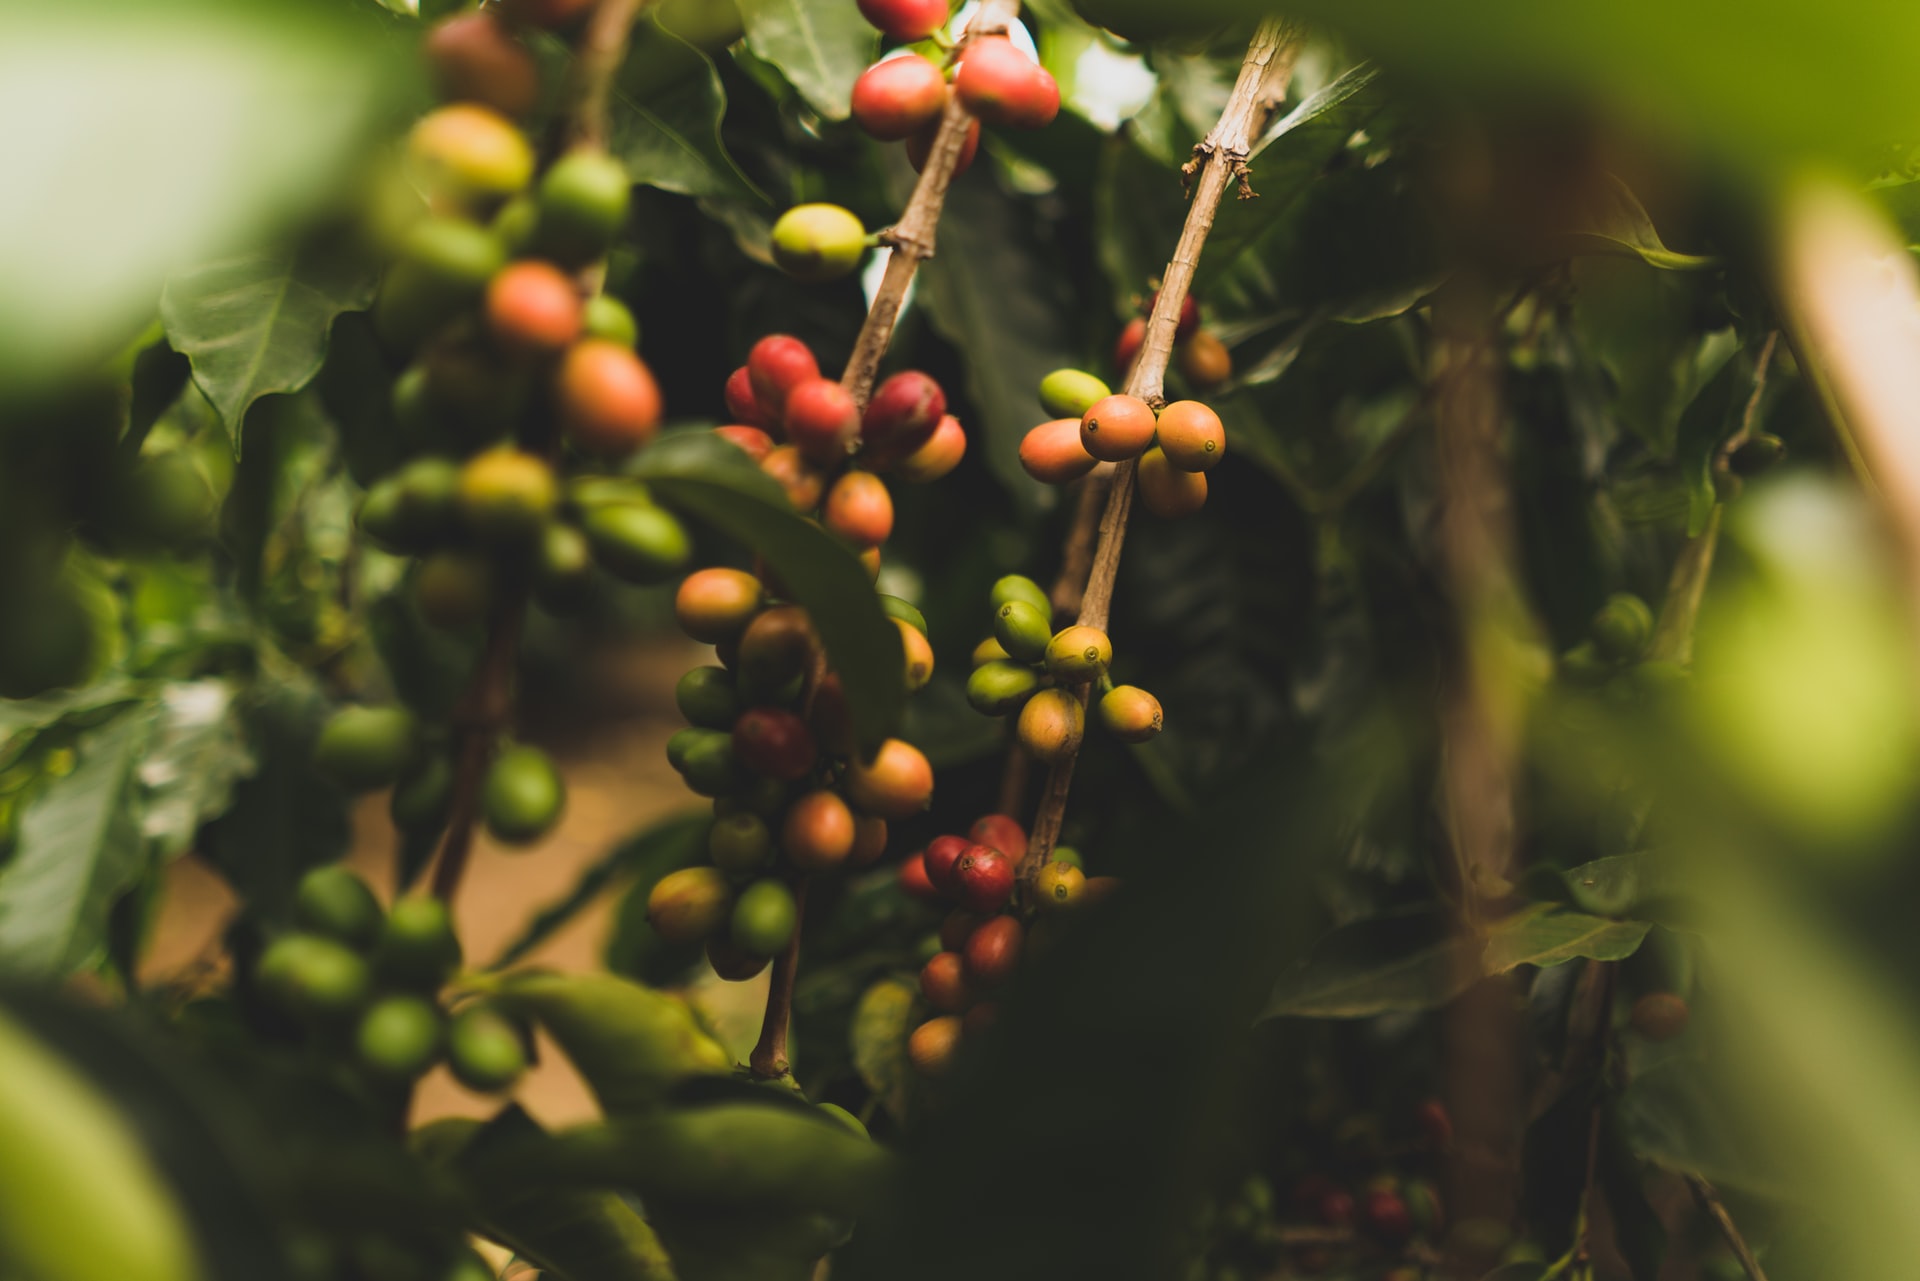 Planta de café com frutos verdes e maduros